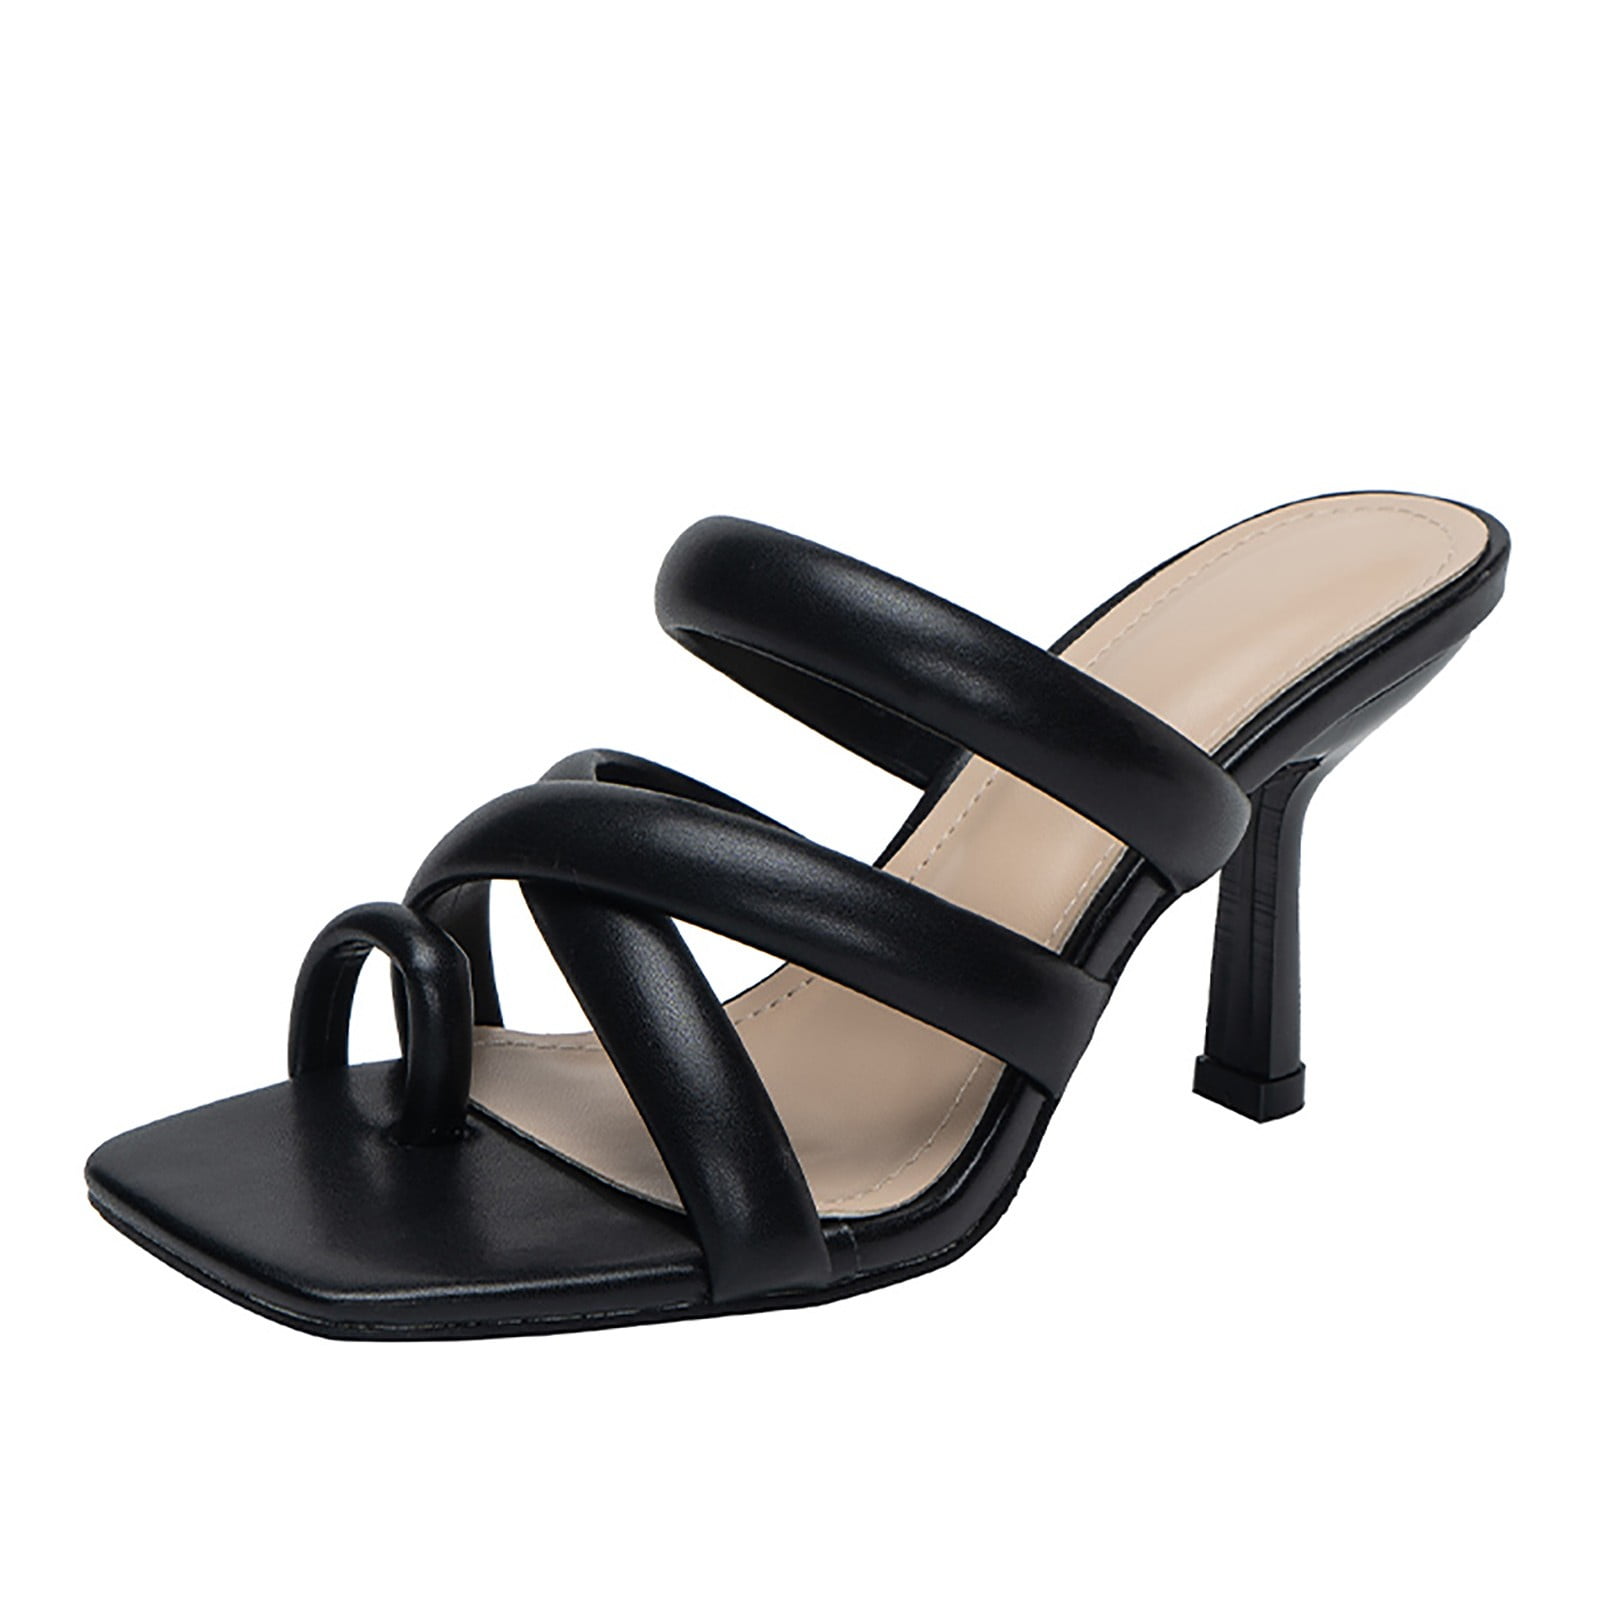 Dr. Scholl's Size 11 Women's Sandals Stripe Faux W | Black sandals heels,  Woven leather sandals, Womens sandals